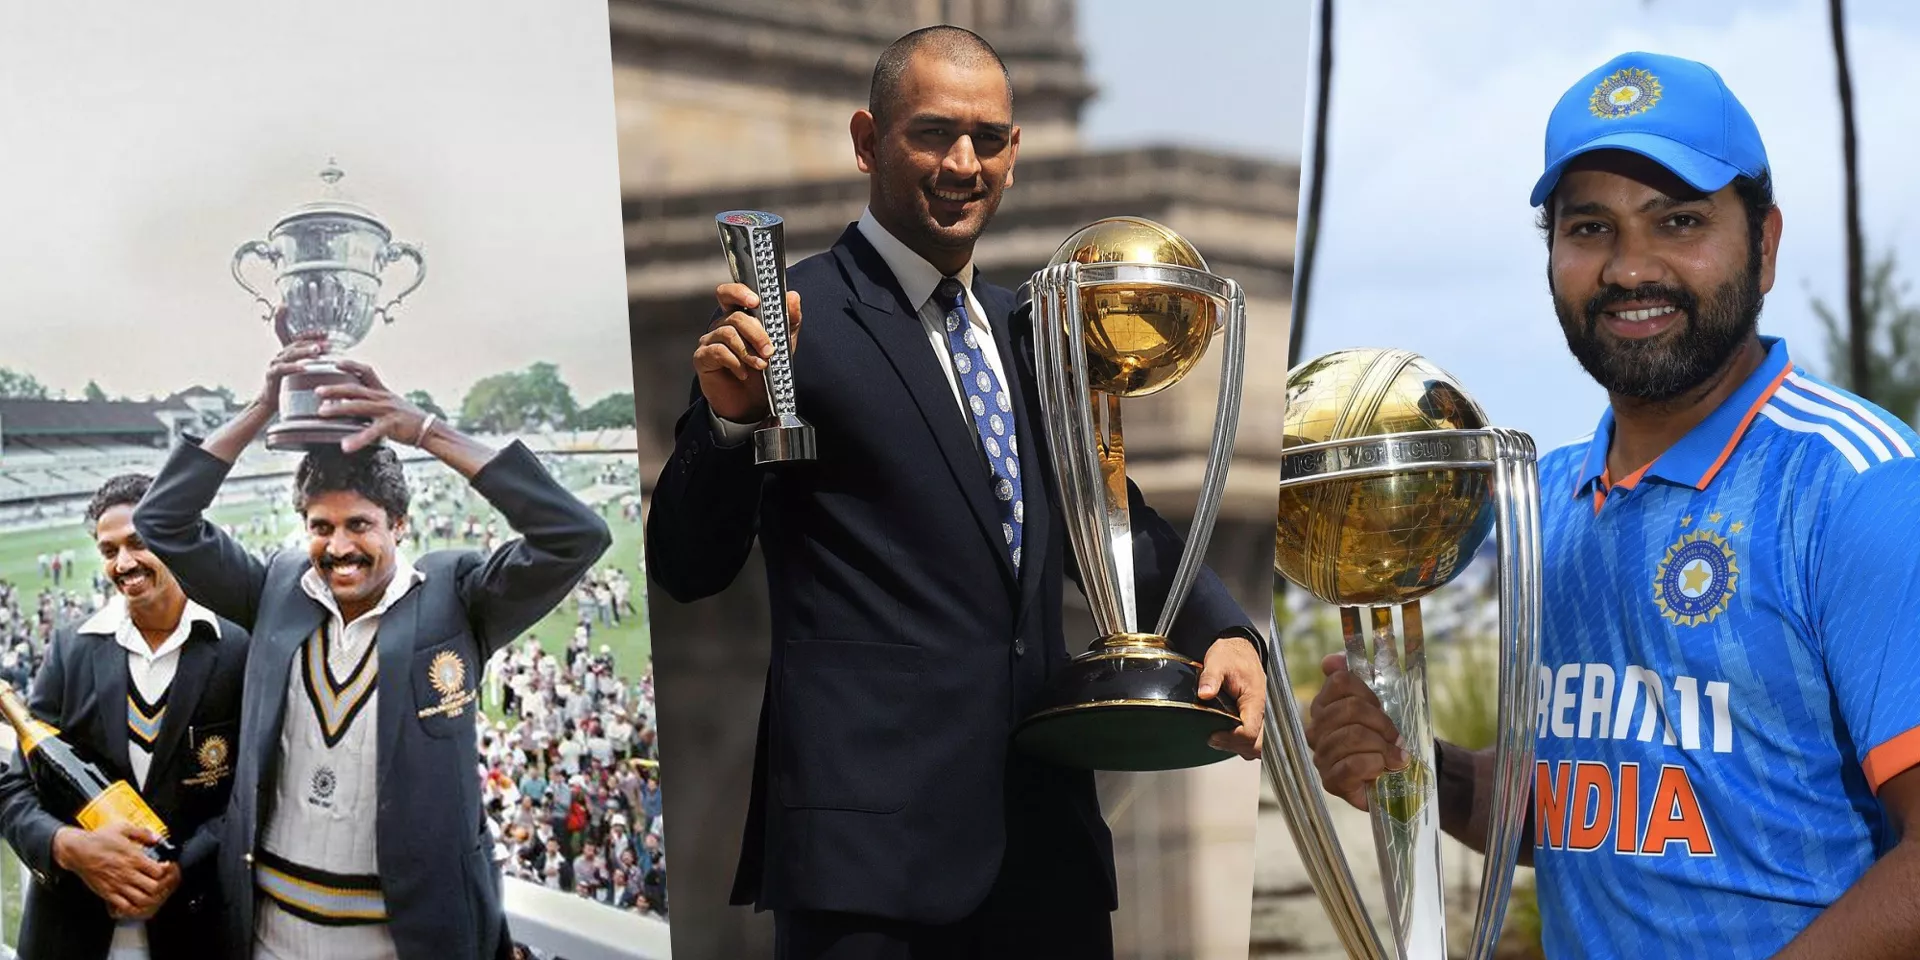 ODI World Cup के प्रत्येक संस्करण में भारत की कप्तानी करने वाले खिलाड़ियों की सूची